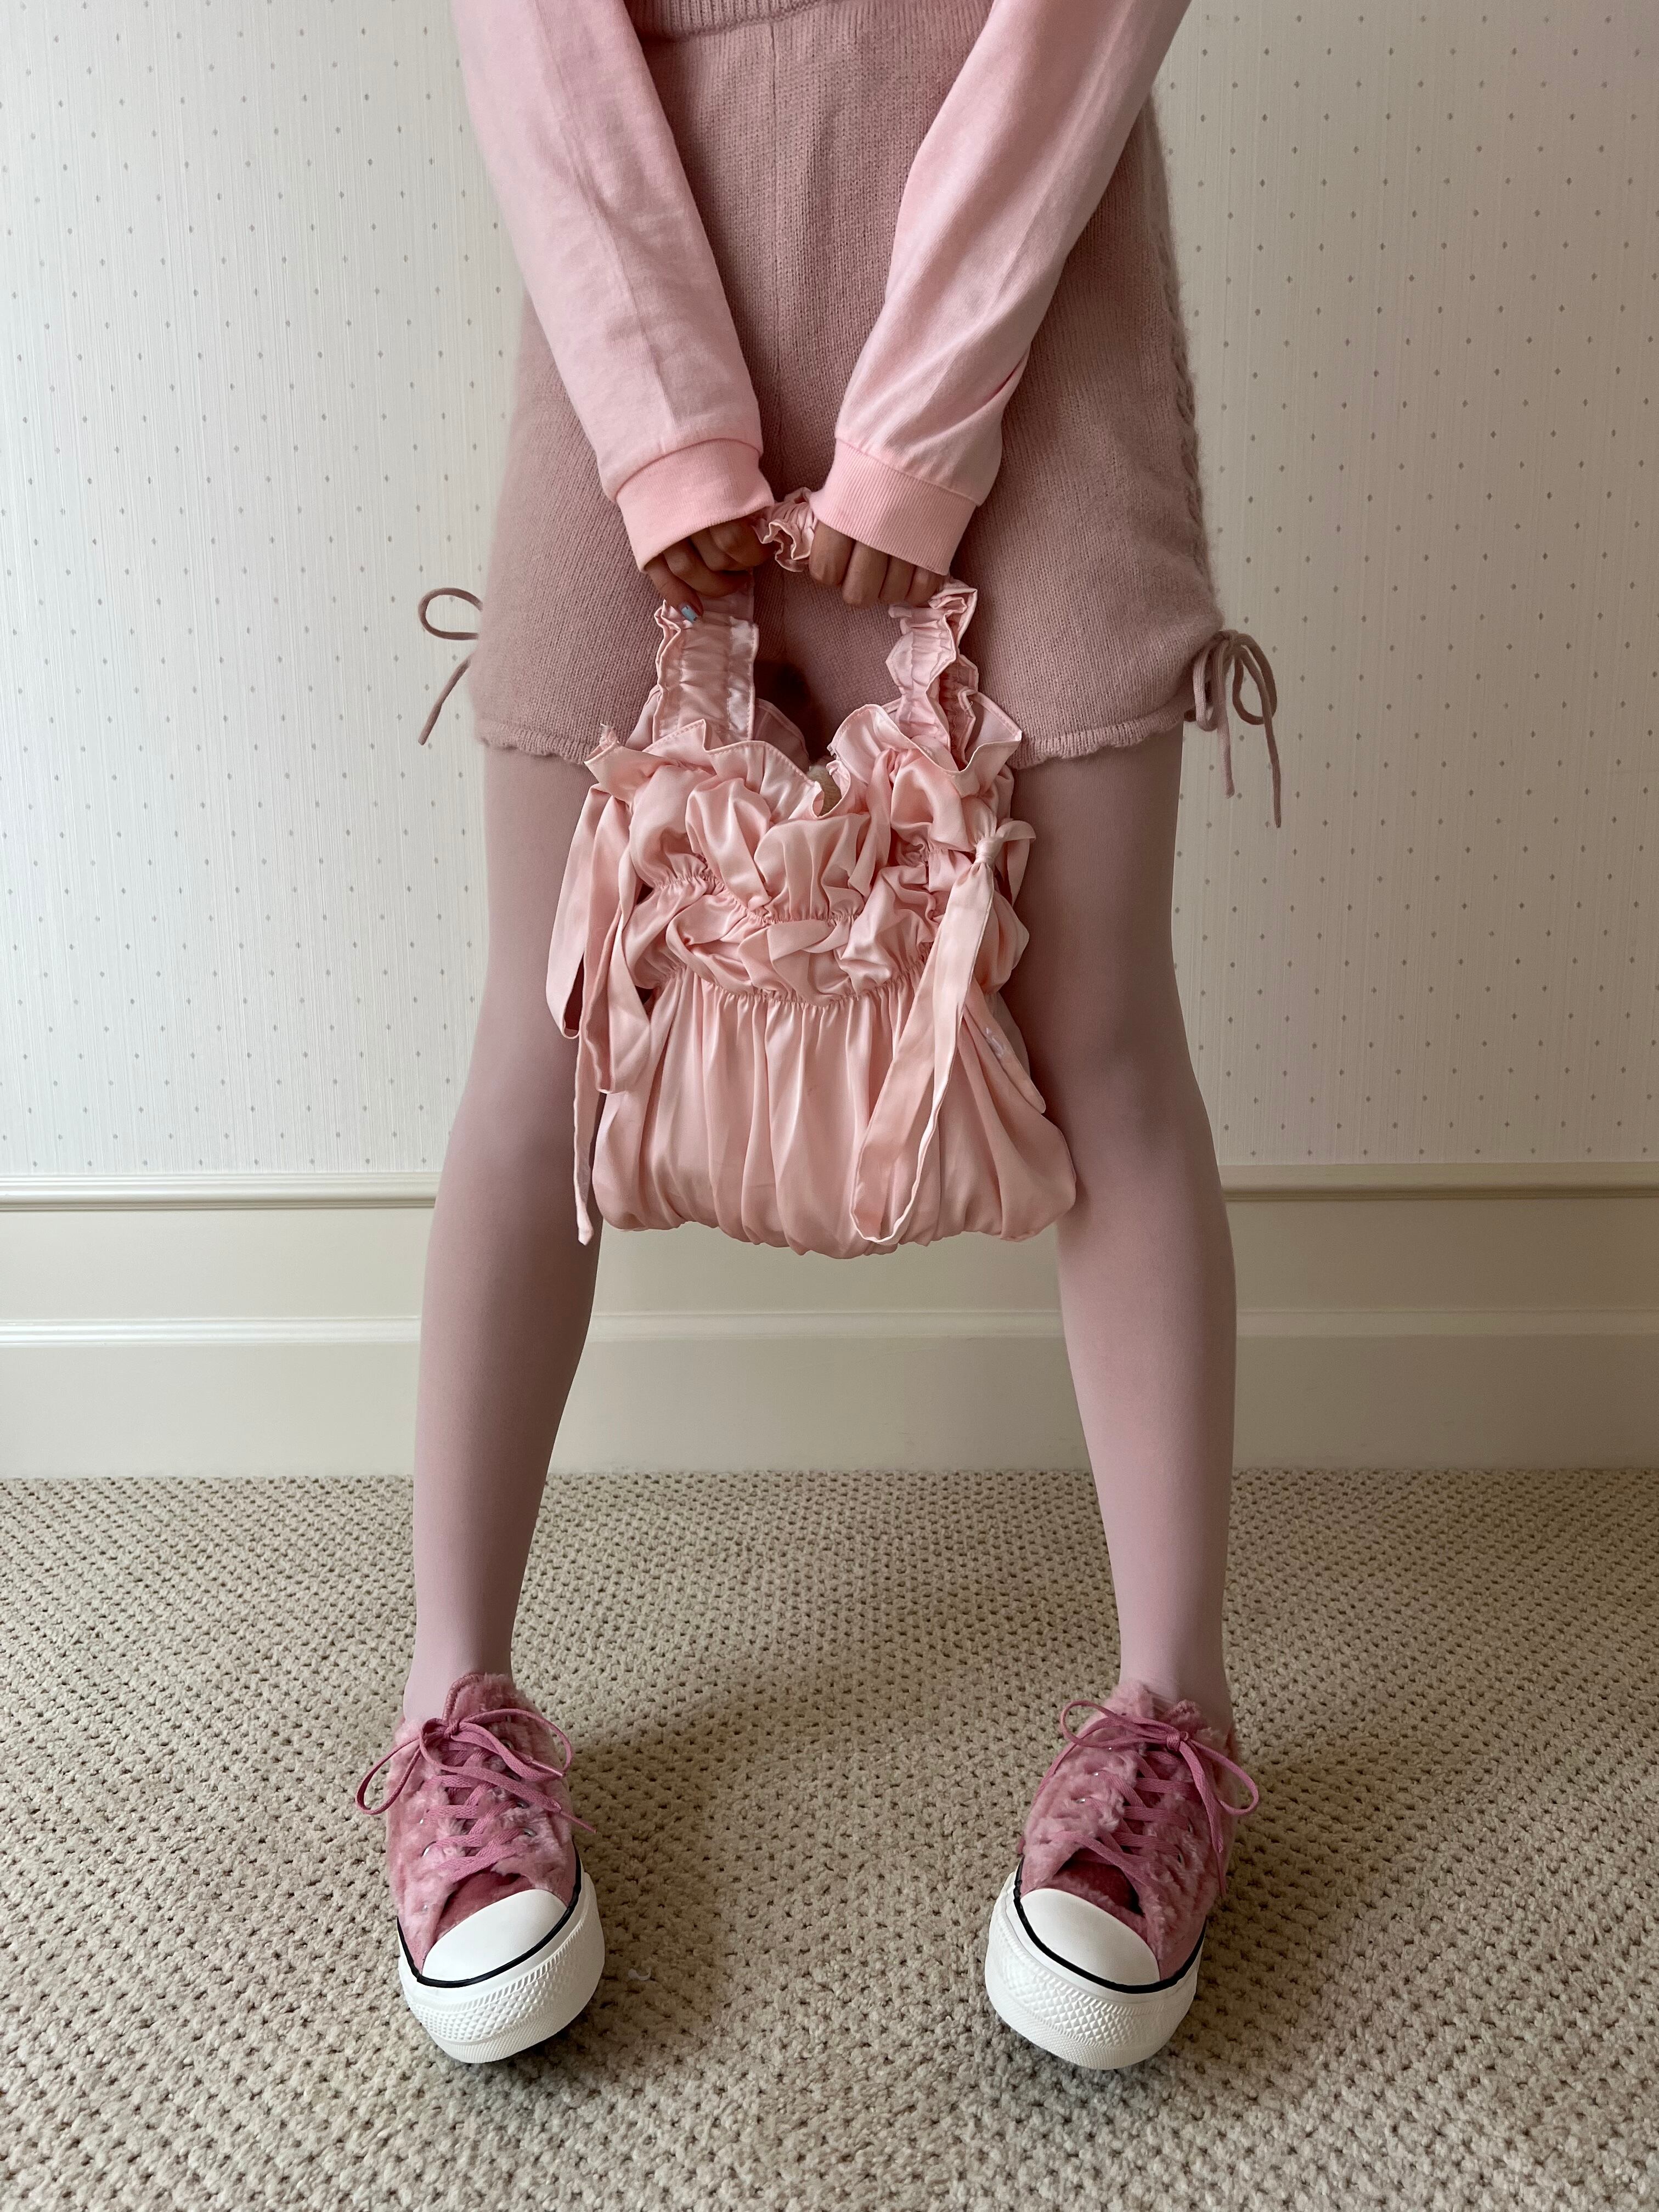 ミーヤミーヤ ''my'' whip cream bag pink